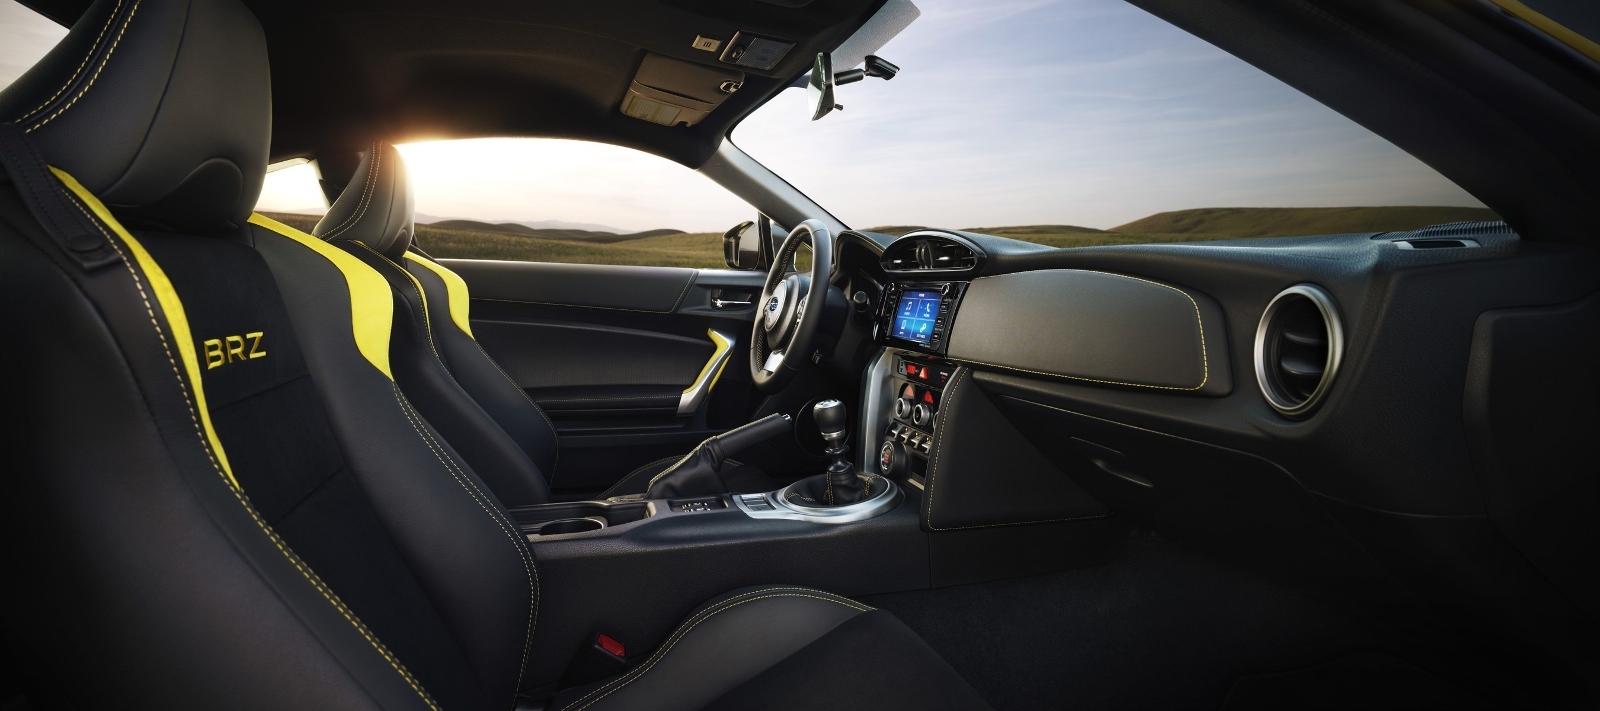 Subaru Brz 2017 Interior Shifting Lanes